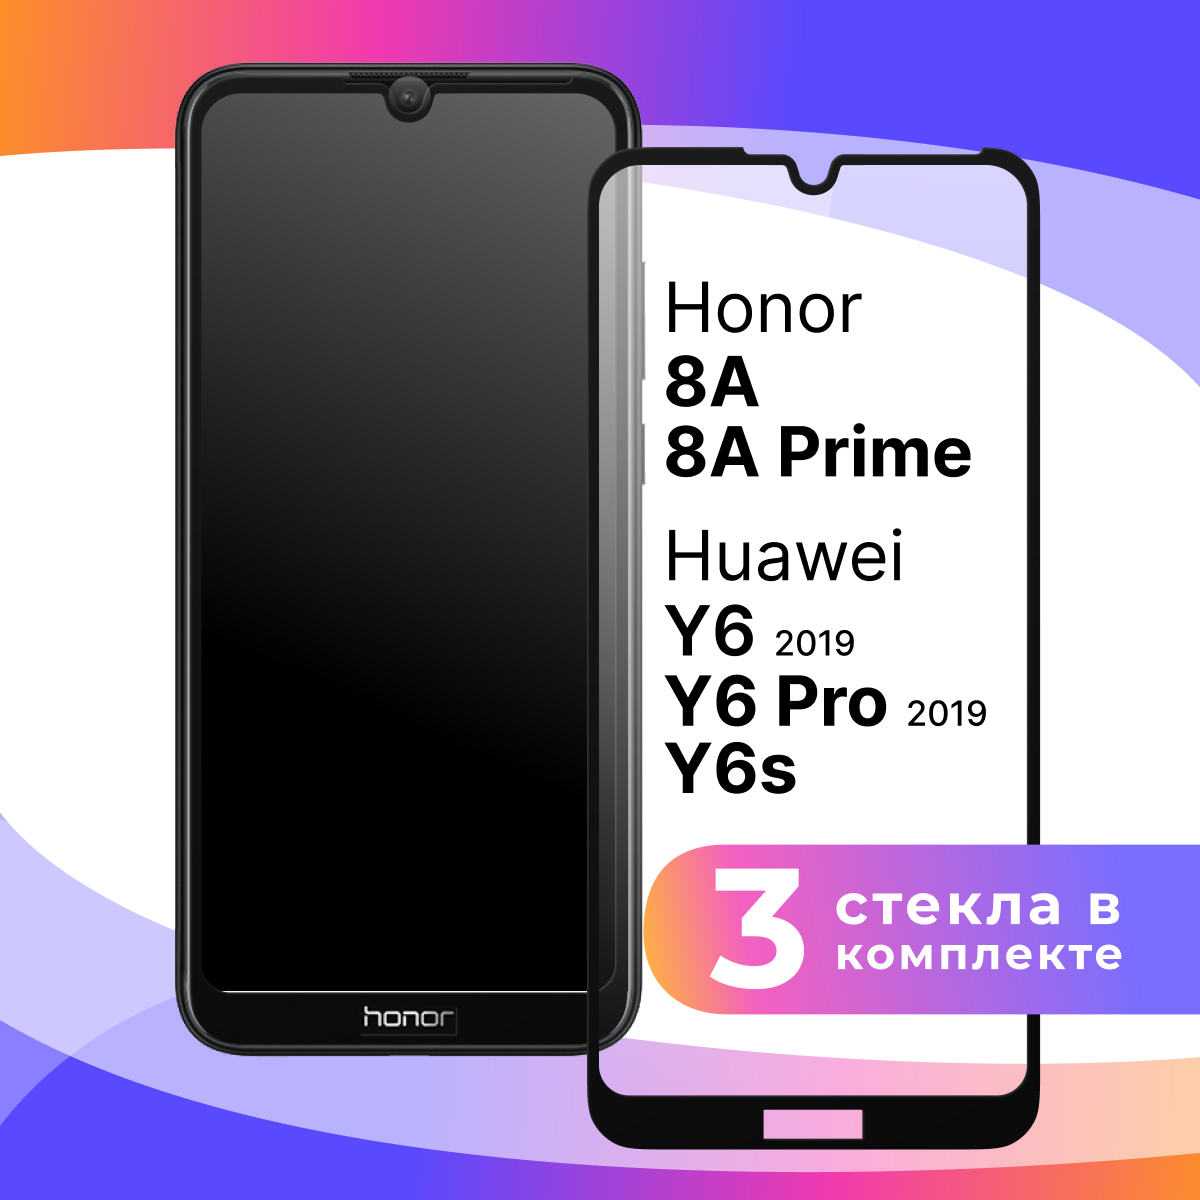 Комплект 3 шт. Защитное стекло для телефона Honor 8A 8A Pro 8A Prime Y6 Pro 2019 Y6 2019 и Y6s / Хонор 8А 8A Про 8А Прайм У6 Про У6 и У6с